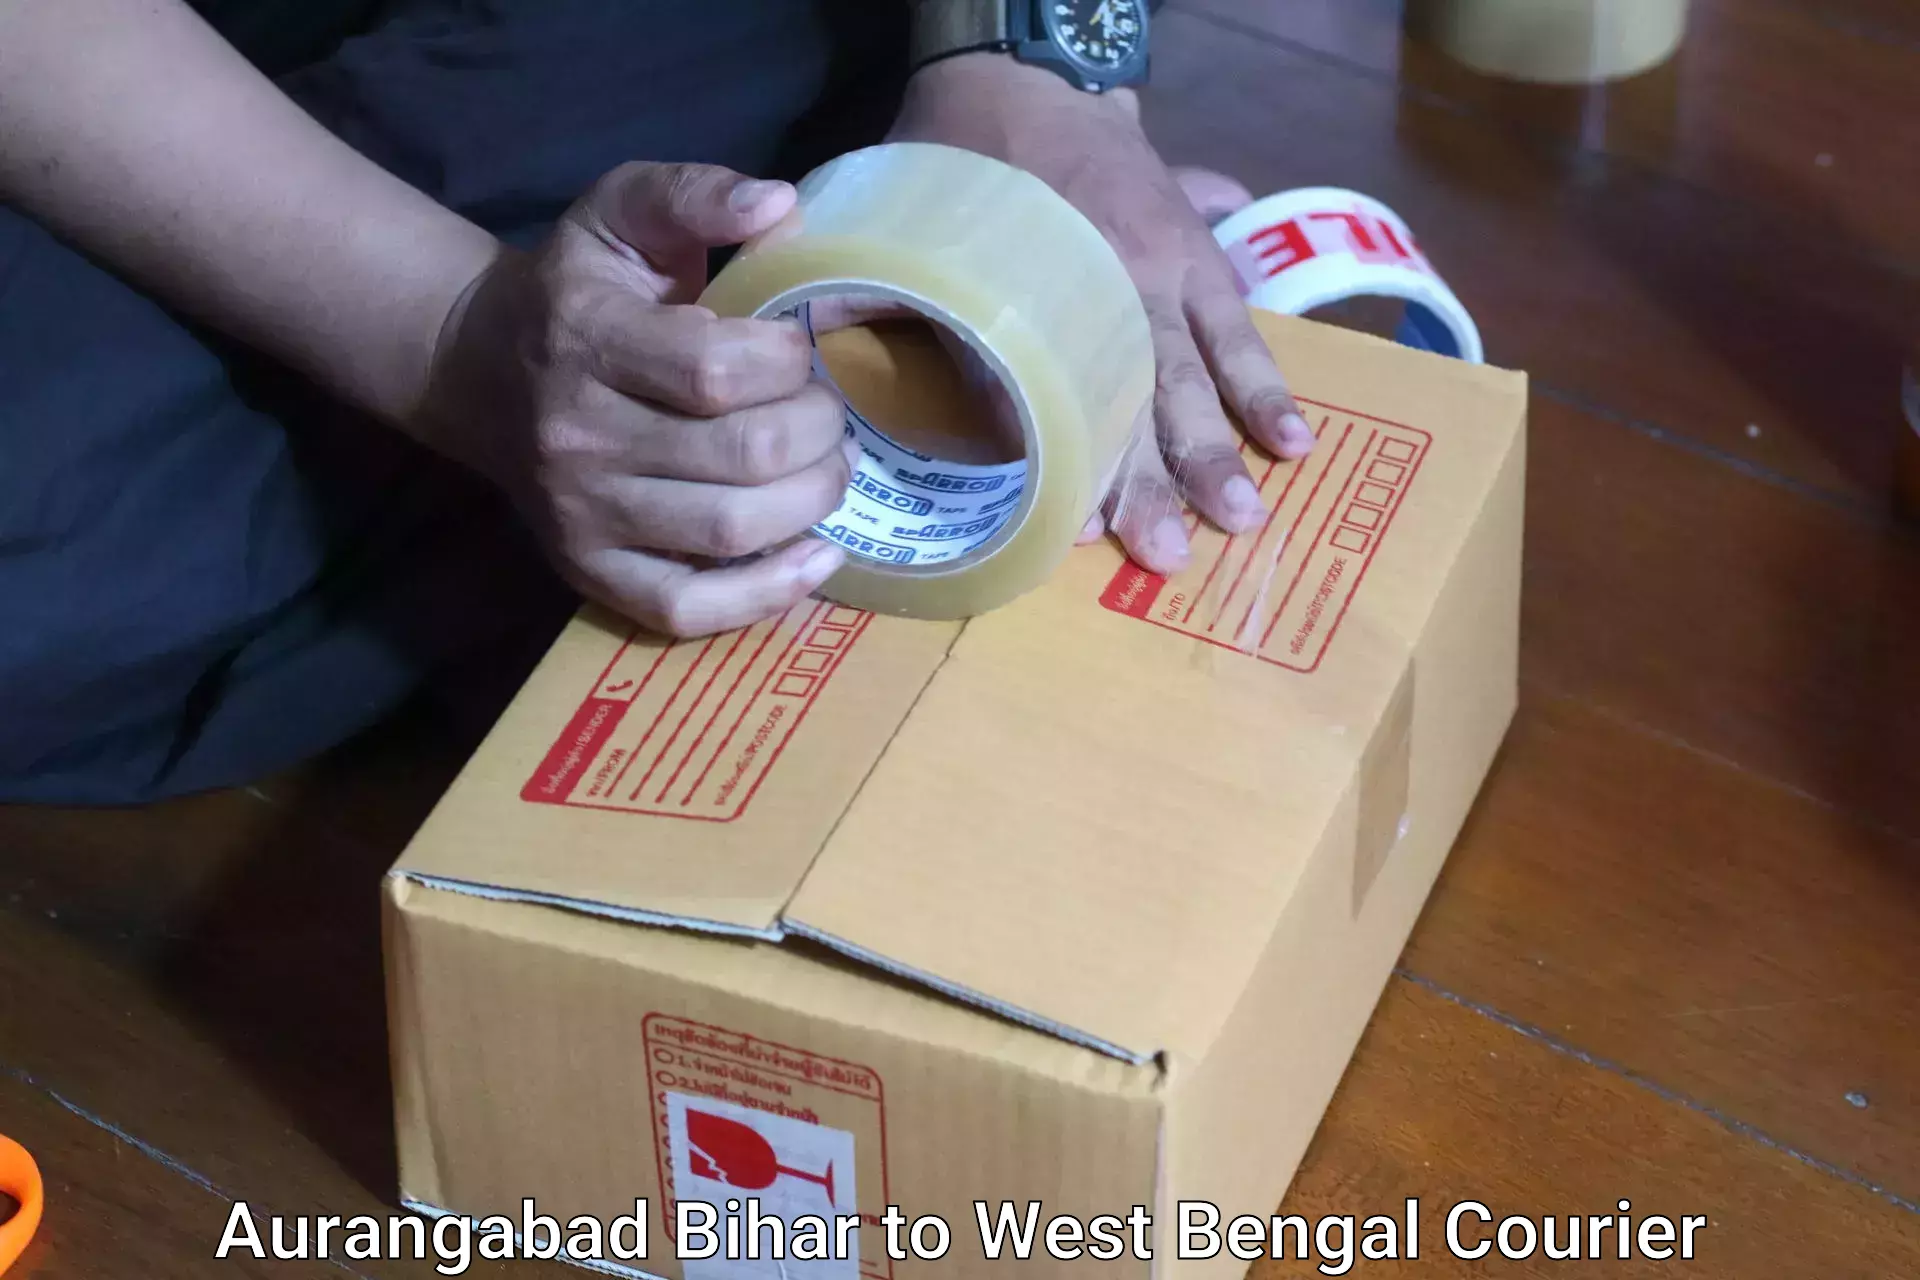 Luggage shipment tracking Aurangabad Bihar to West Bengal